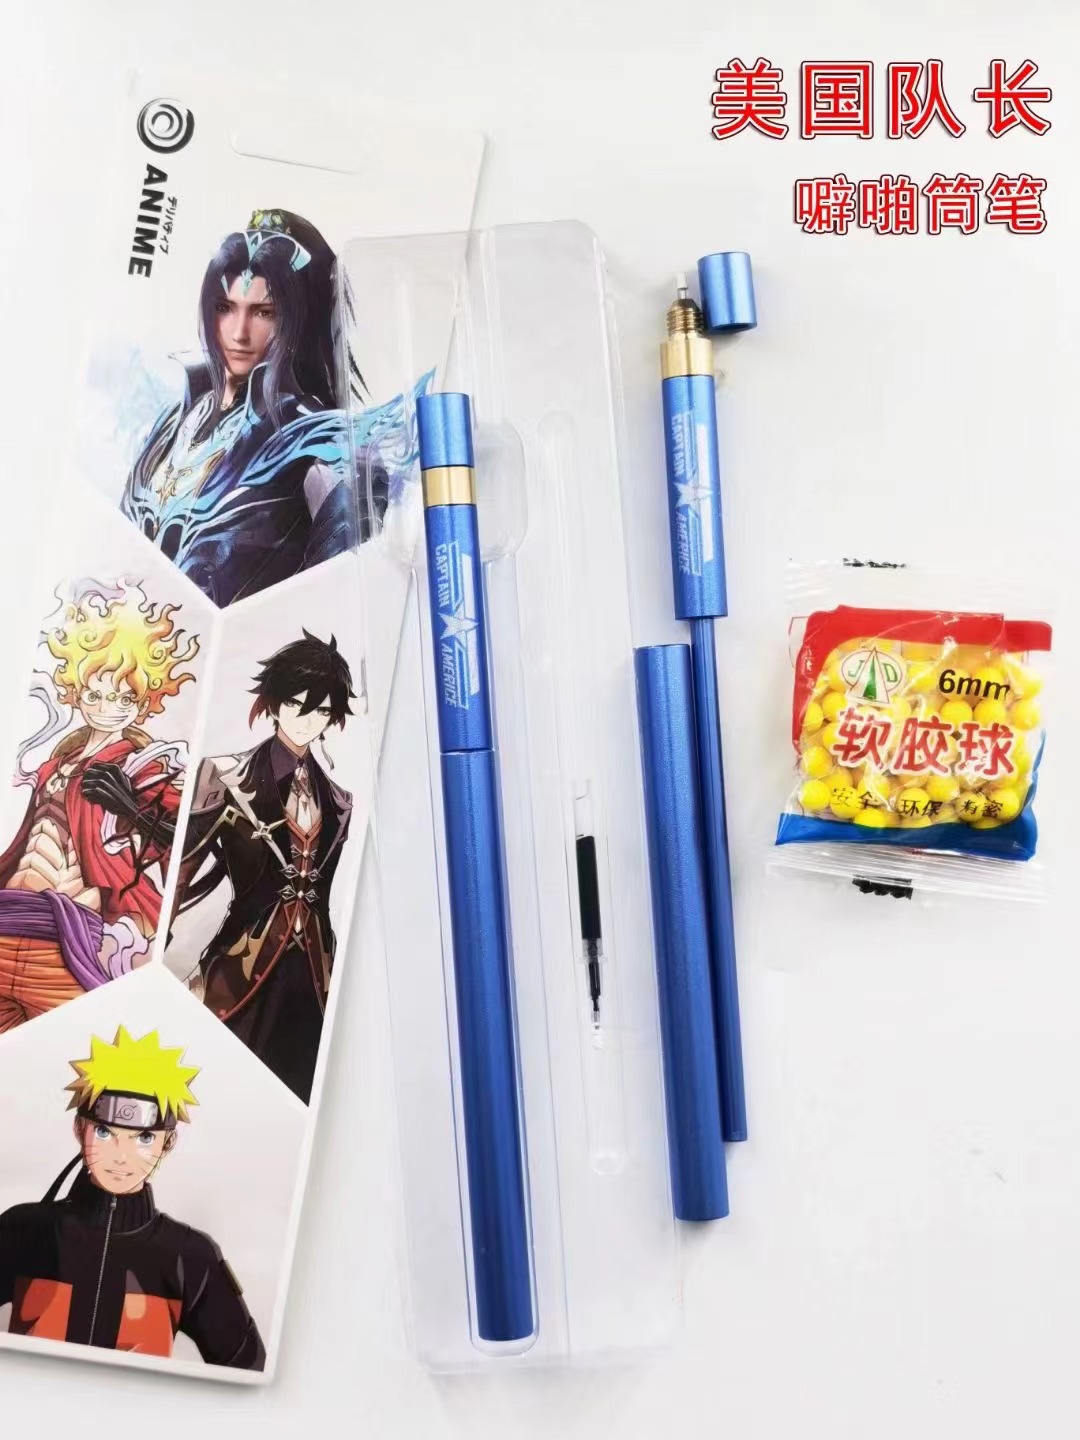 Avengers anime pipa tube pen